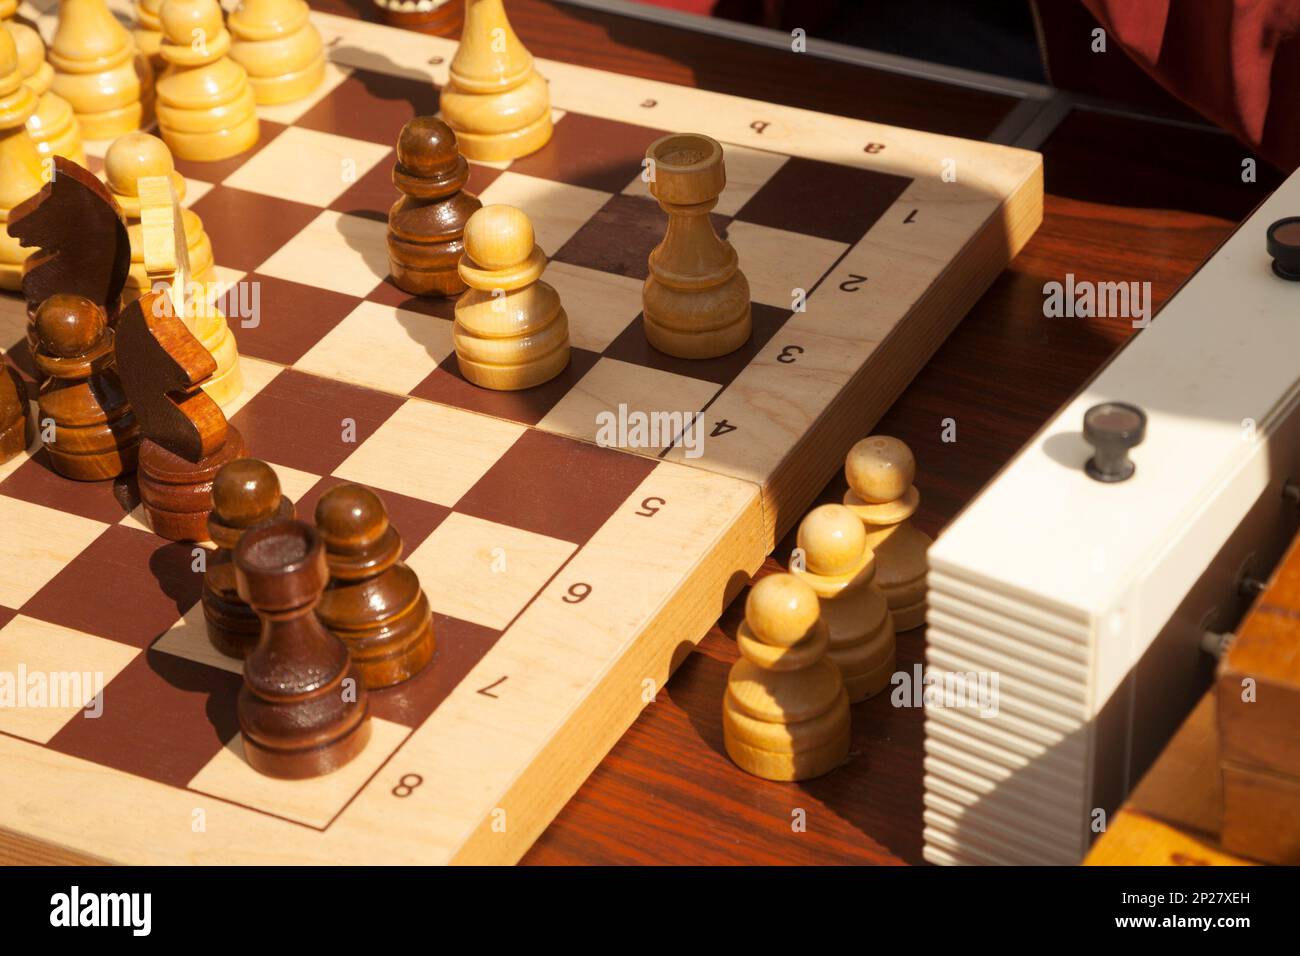 Jogos De Mesa Japoneses Da Estratégia Da Xadrez Em Japão Foto de Stock -  Imagem de quadros, cérebro: 93786568